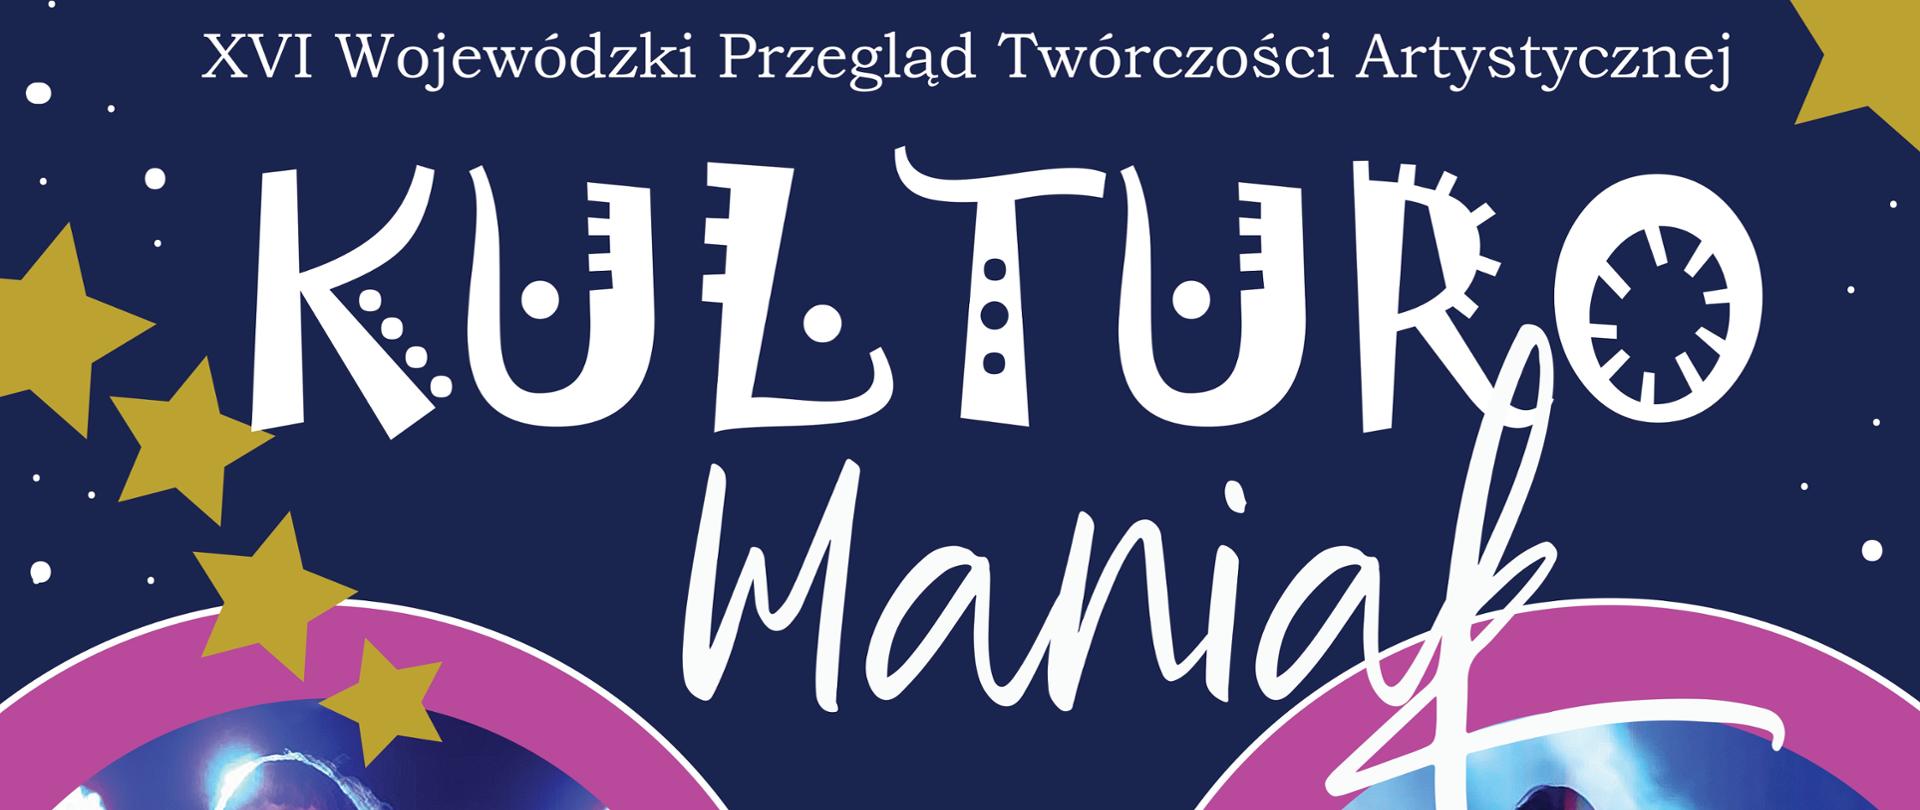 Kulturomaniak 2022 plakat